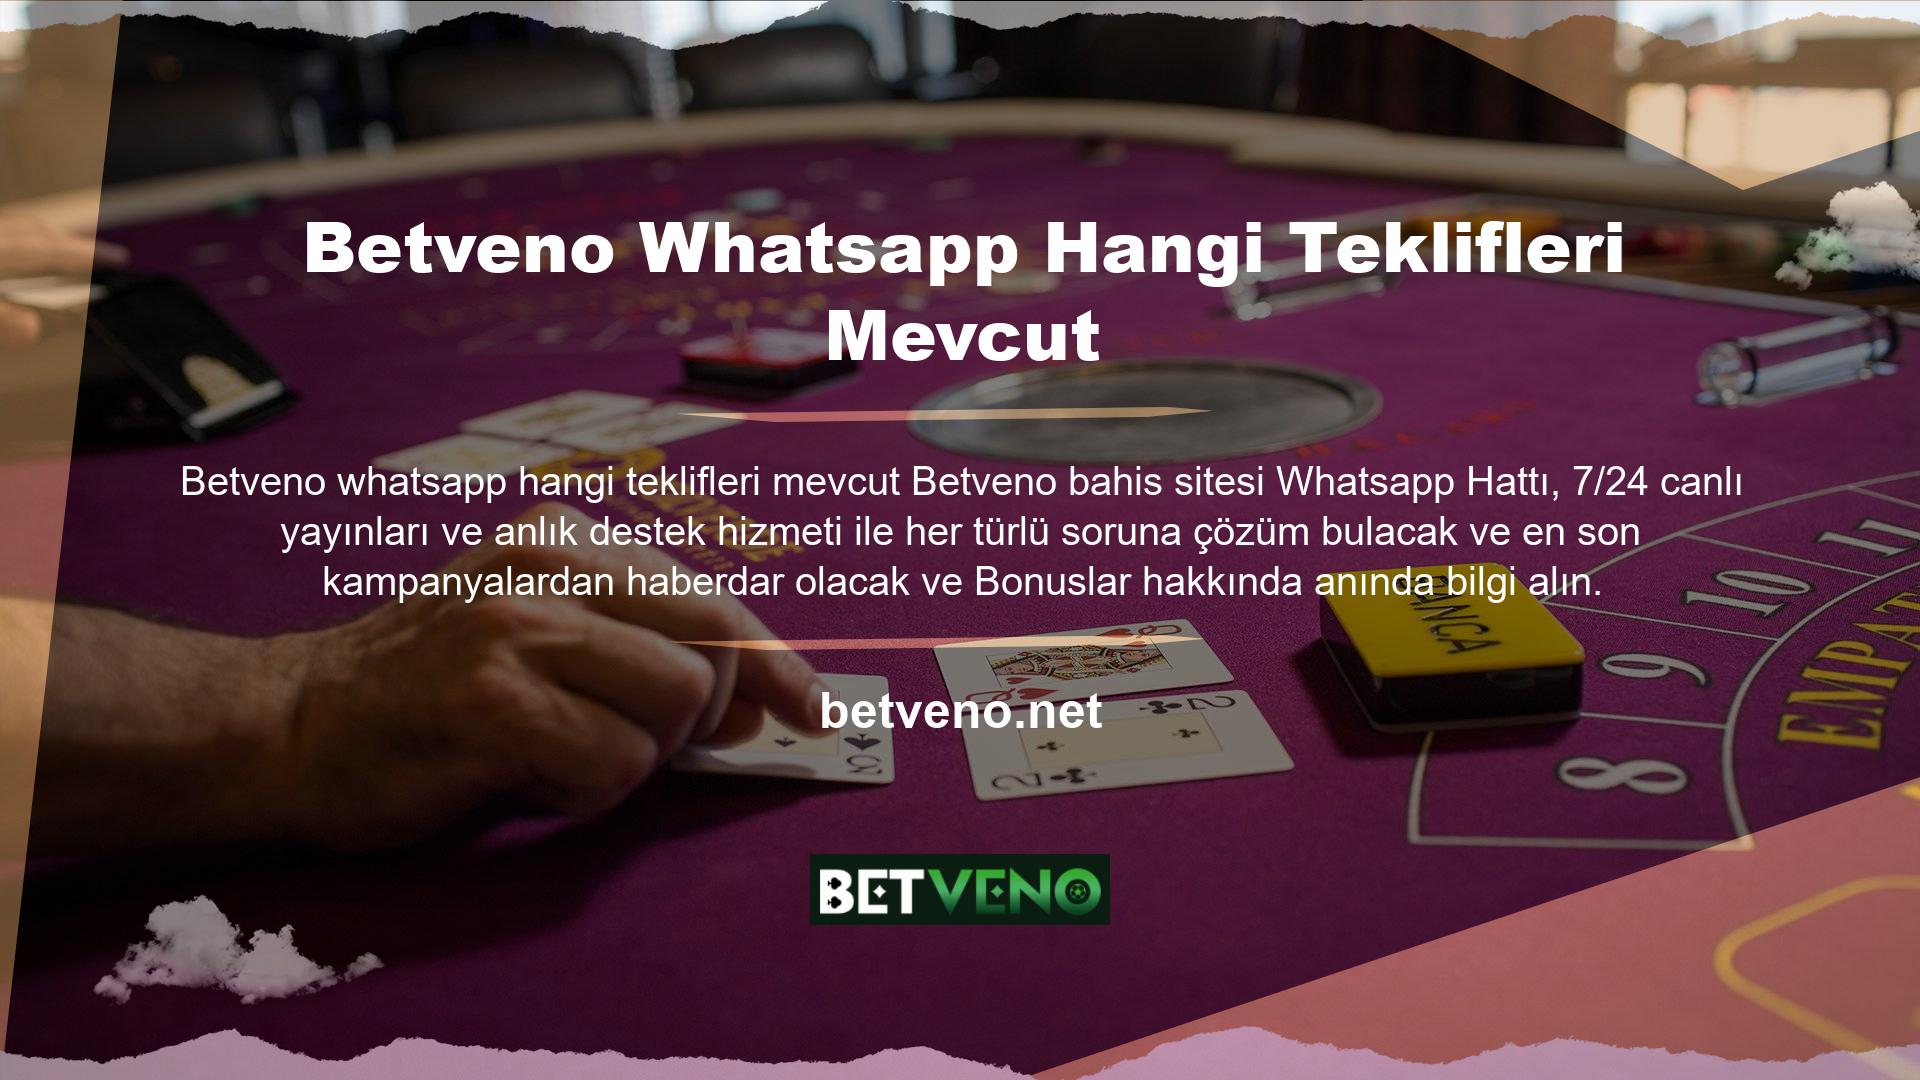 Betveno Whatsapp ürün gamına özel satış bonusu kampanyalarından kolaylıkla yararlanabilirsiniz